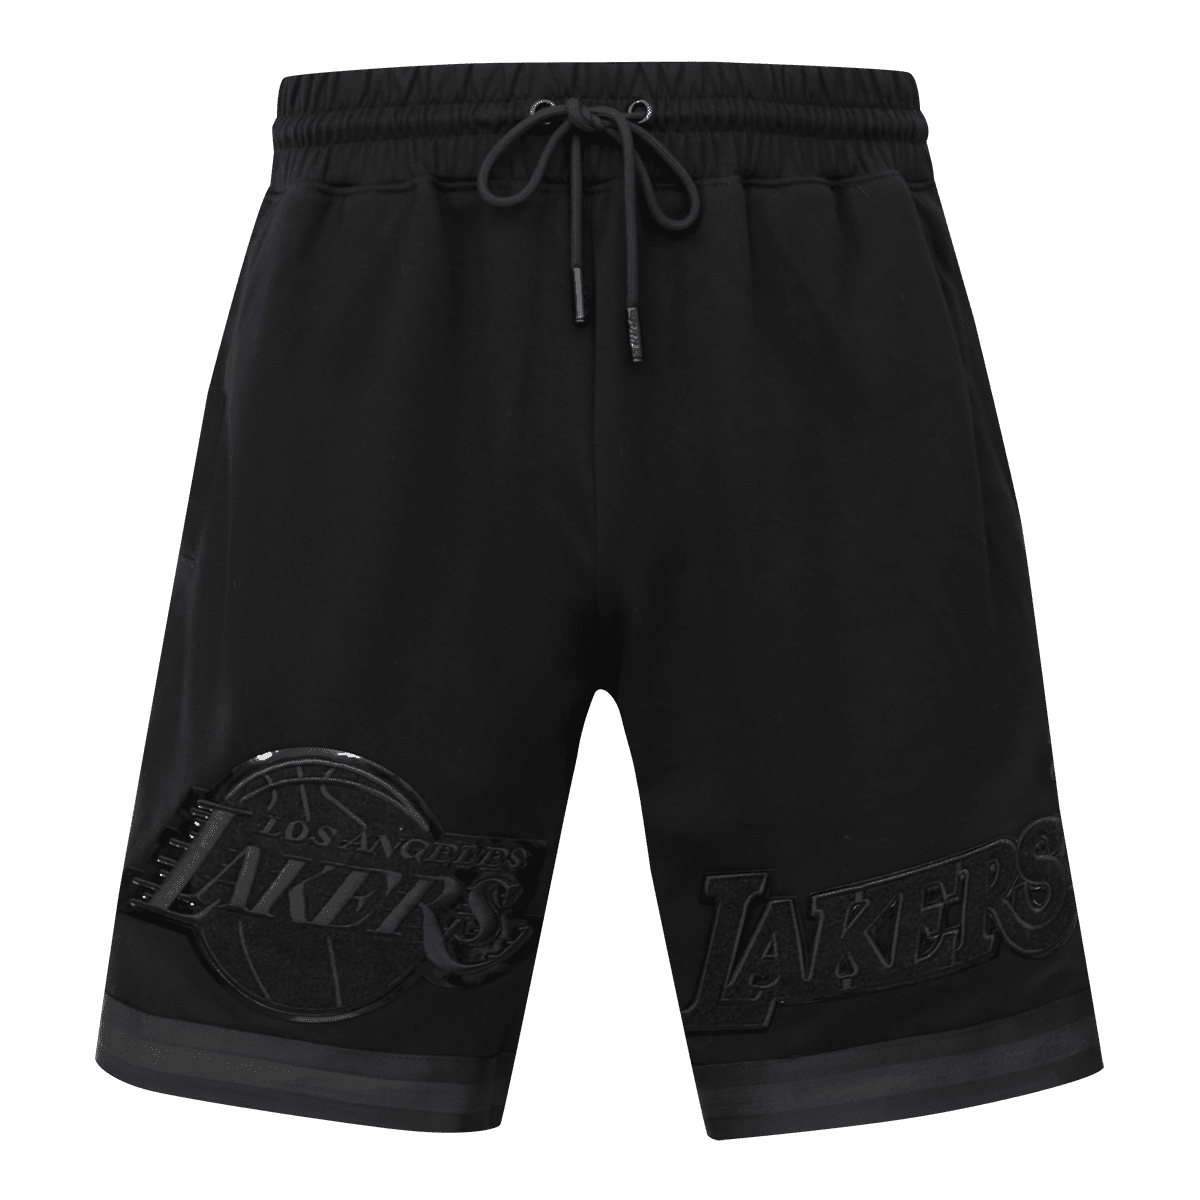 lakers black shorts